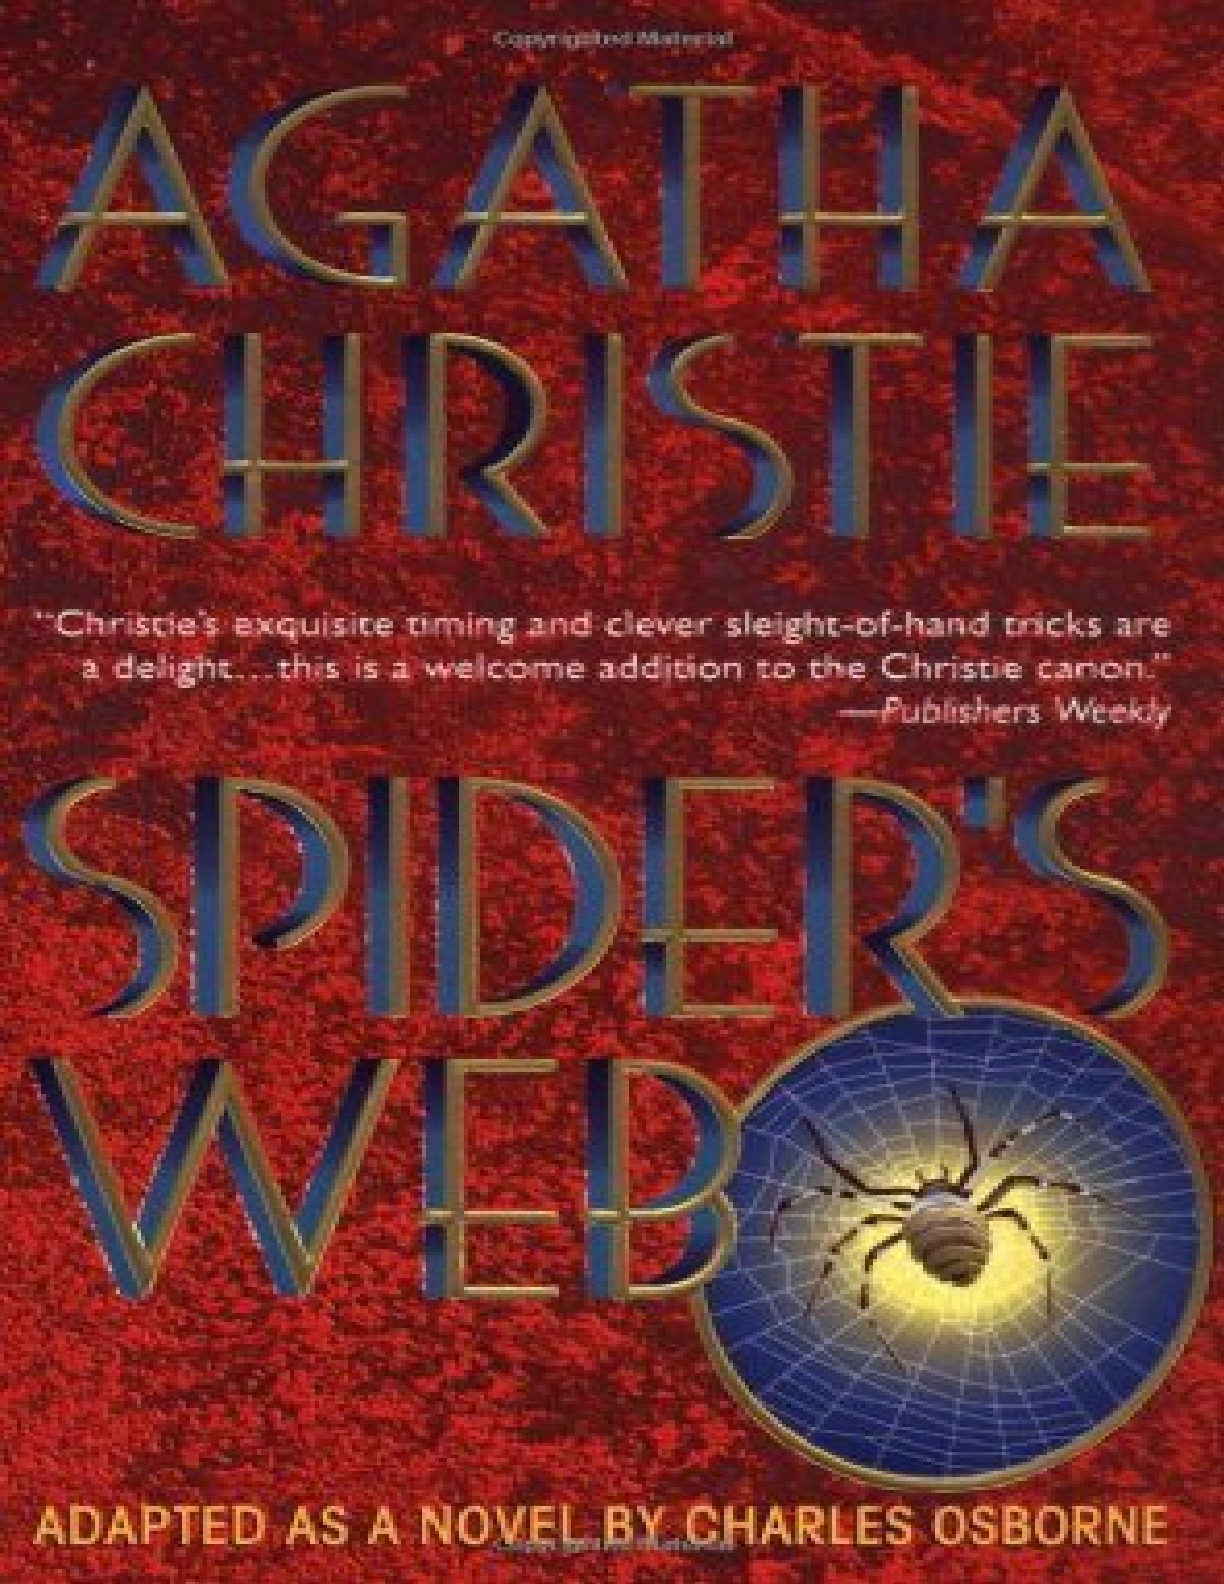 Spider’s Web – Agatha Christie